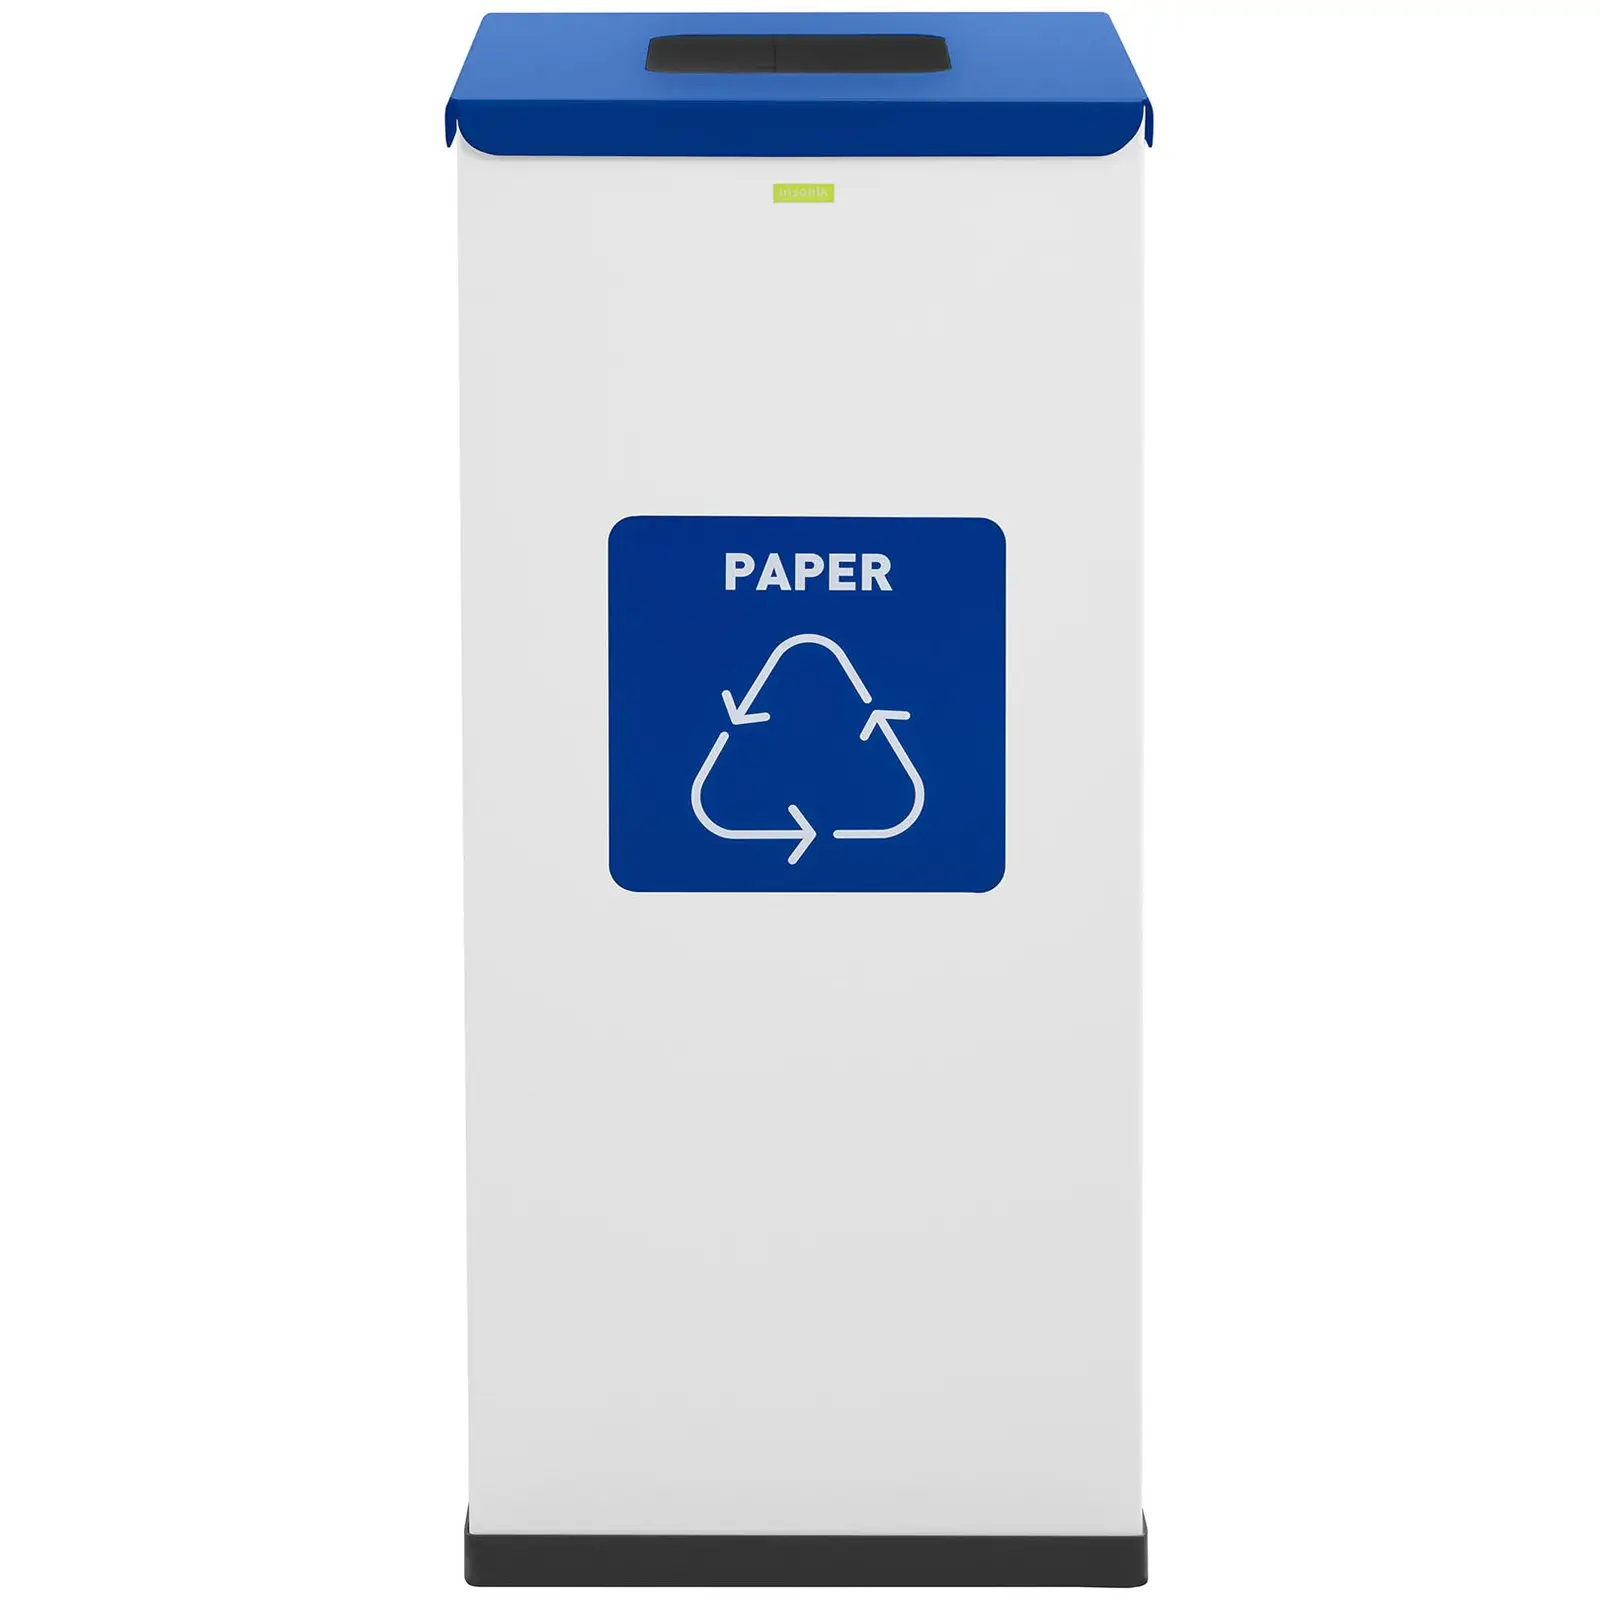 Poubelle de recyclage- 60 L - blanc - labellisée papier